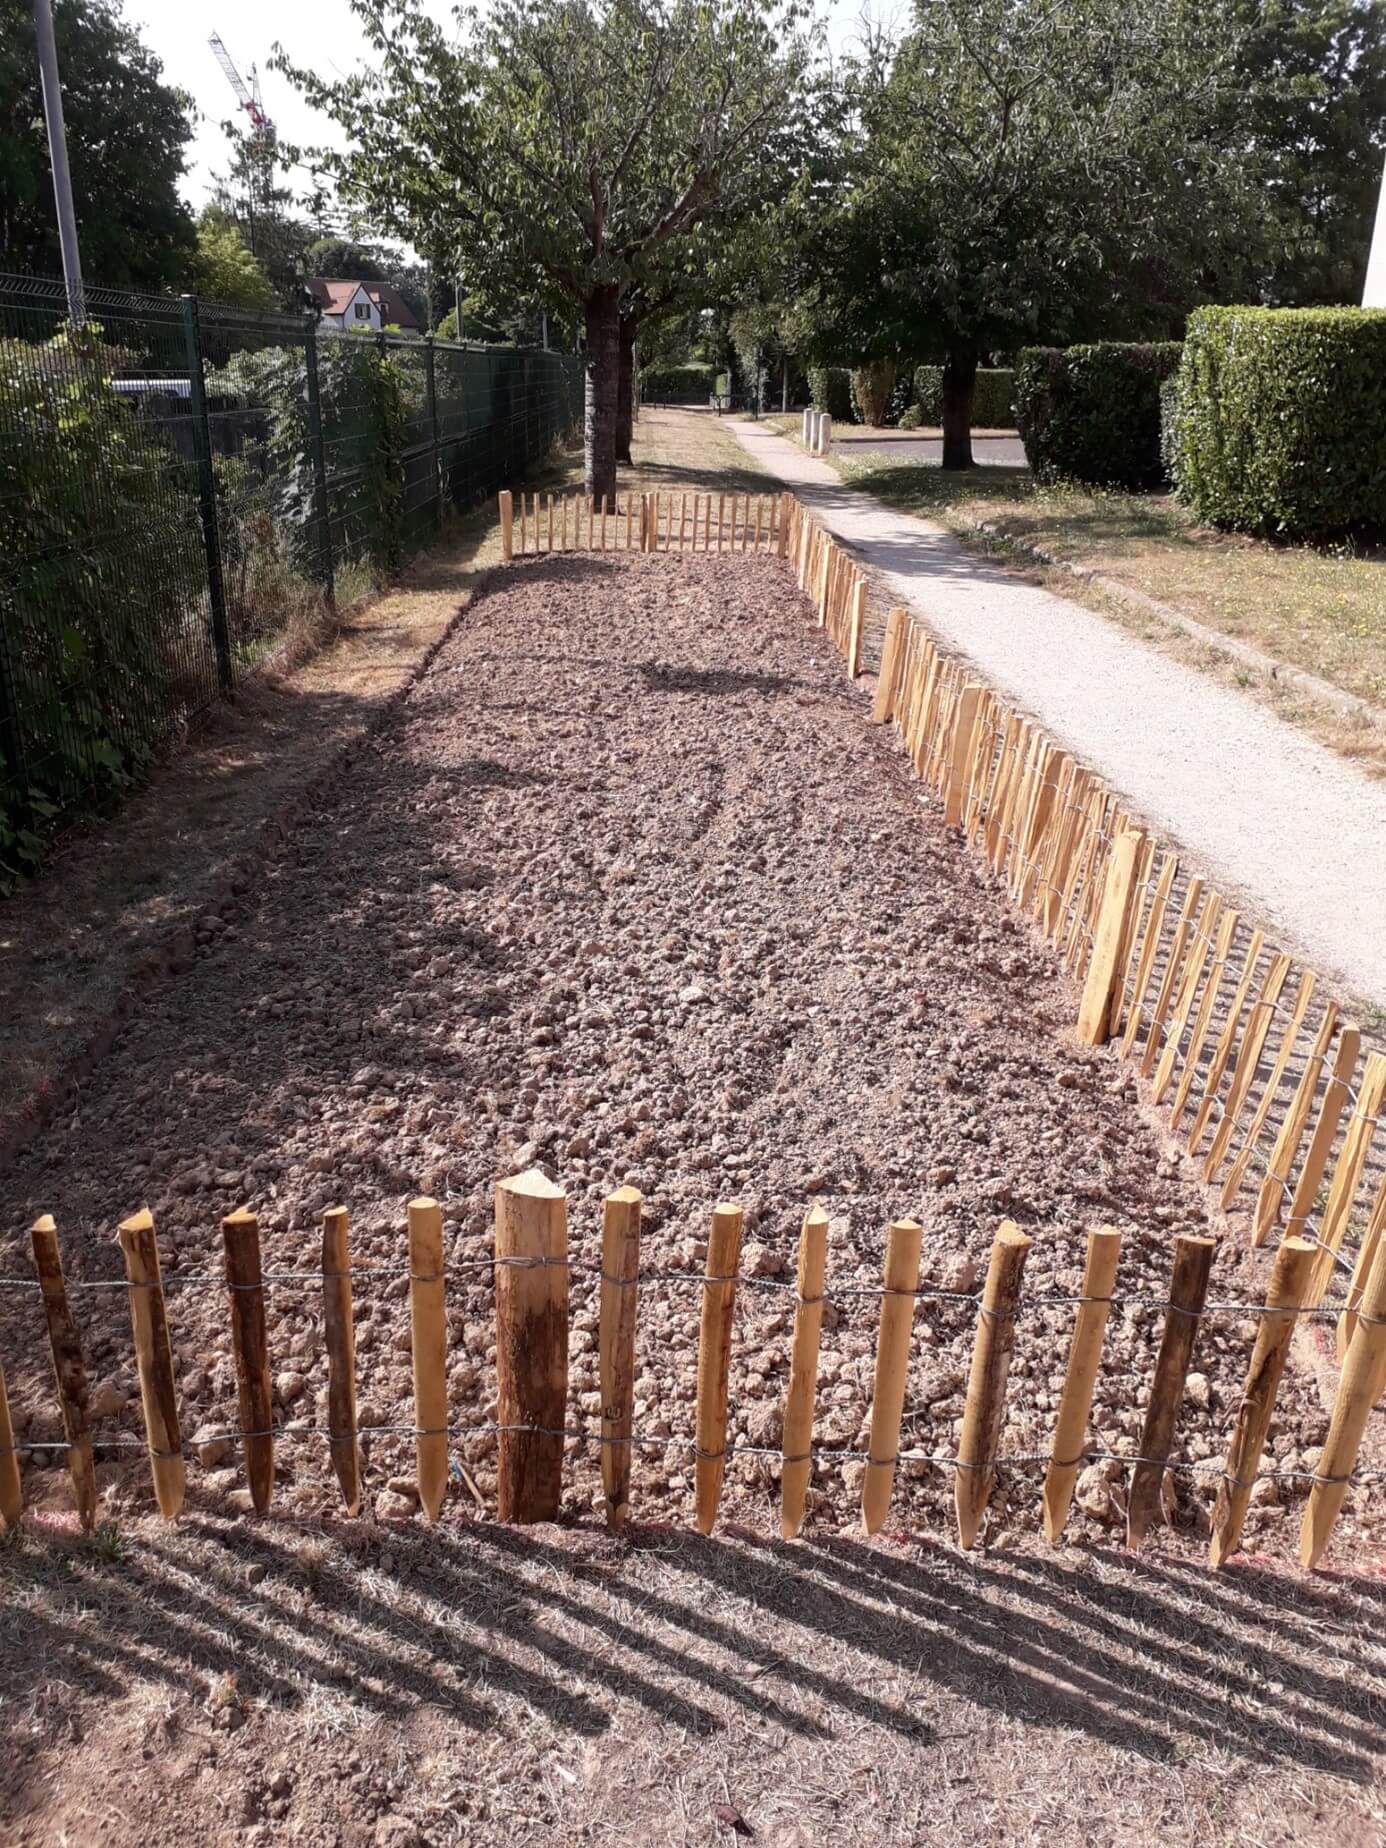 Petit terrain entouré de barrière en bois contenant pour l'instant des gravillon car le projet est en cours de réalisation